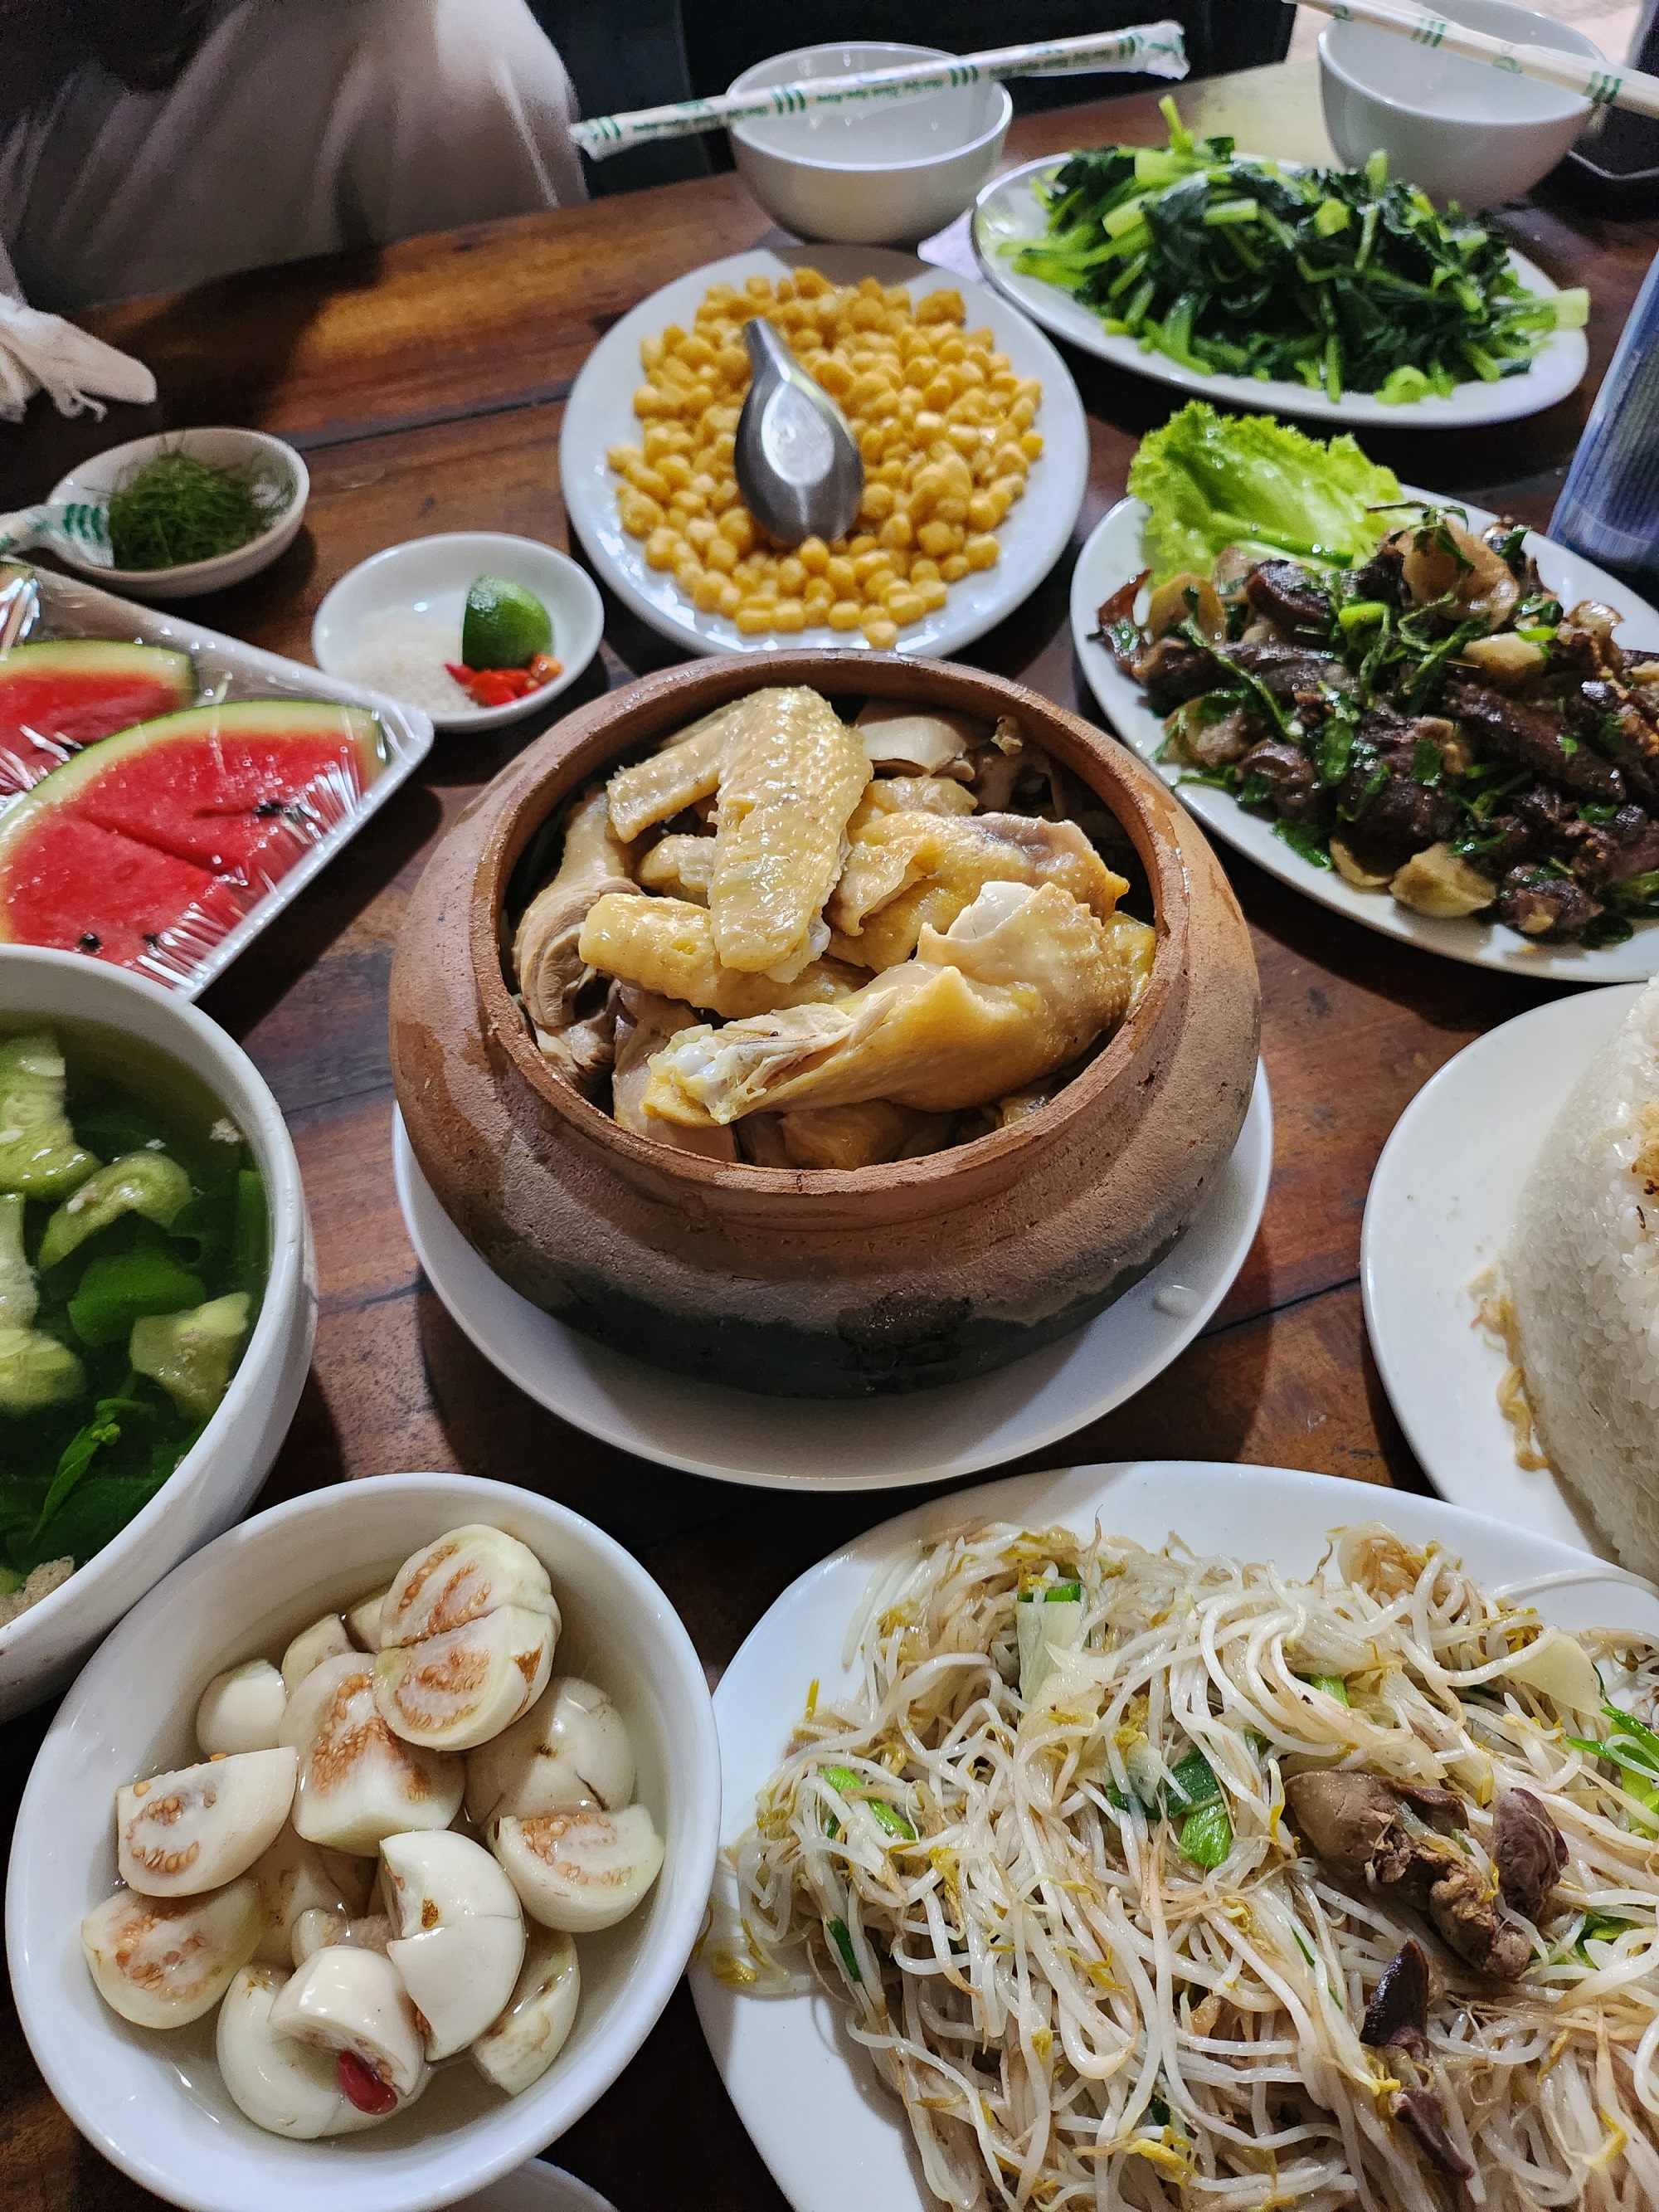 Bữa cơm thân mật được chuẩn bị sẵn thật thịnh soạn - ảnh chụp bởi Huyền Trang